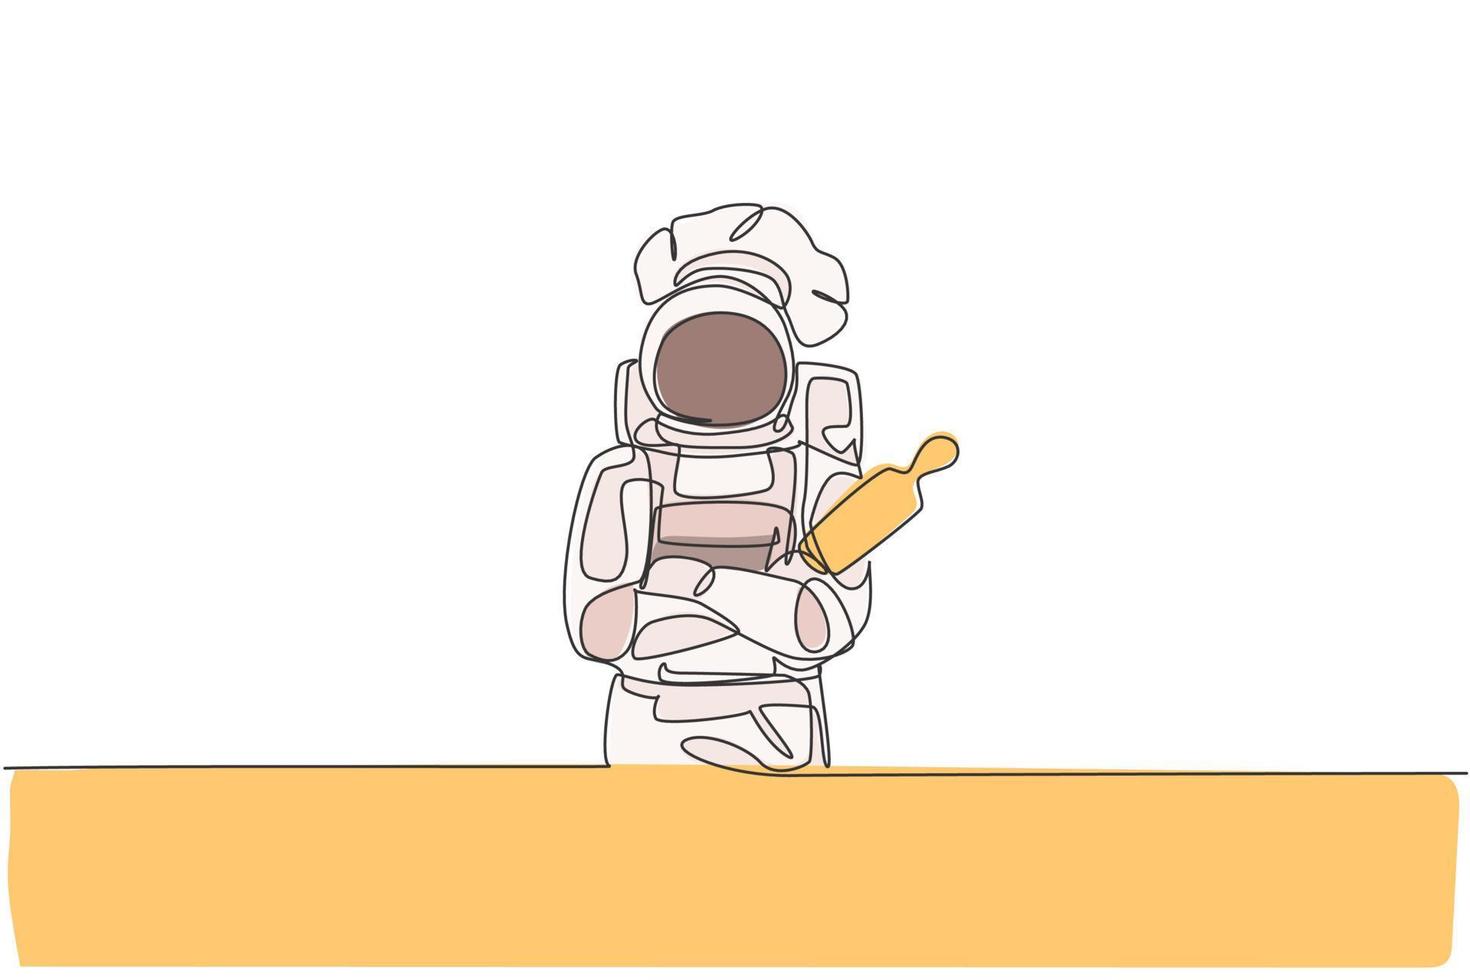 disegno a linea continua dello chef astronauta tenere il mattarello e incrociare la mano sul petto, caffè nello spazio esterno. concetto di negozio di panetteria sano. illustrazione vettoriale di design grafico di una linea alla moda di disegno